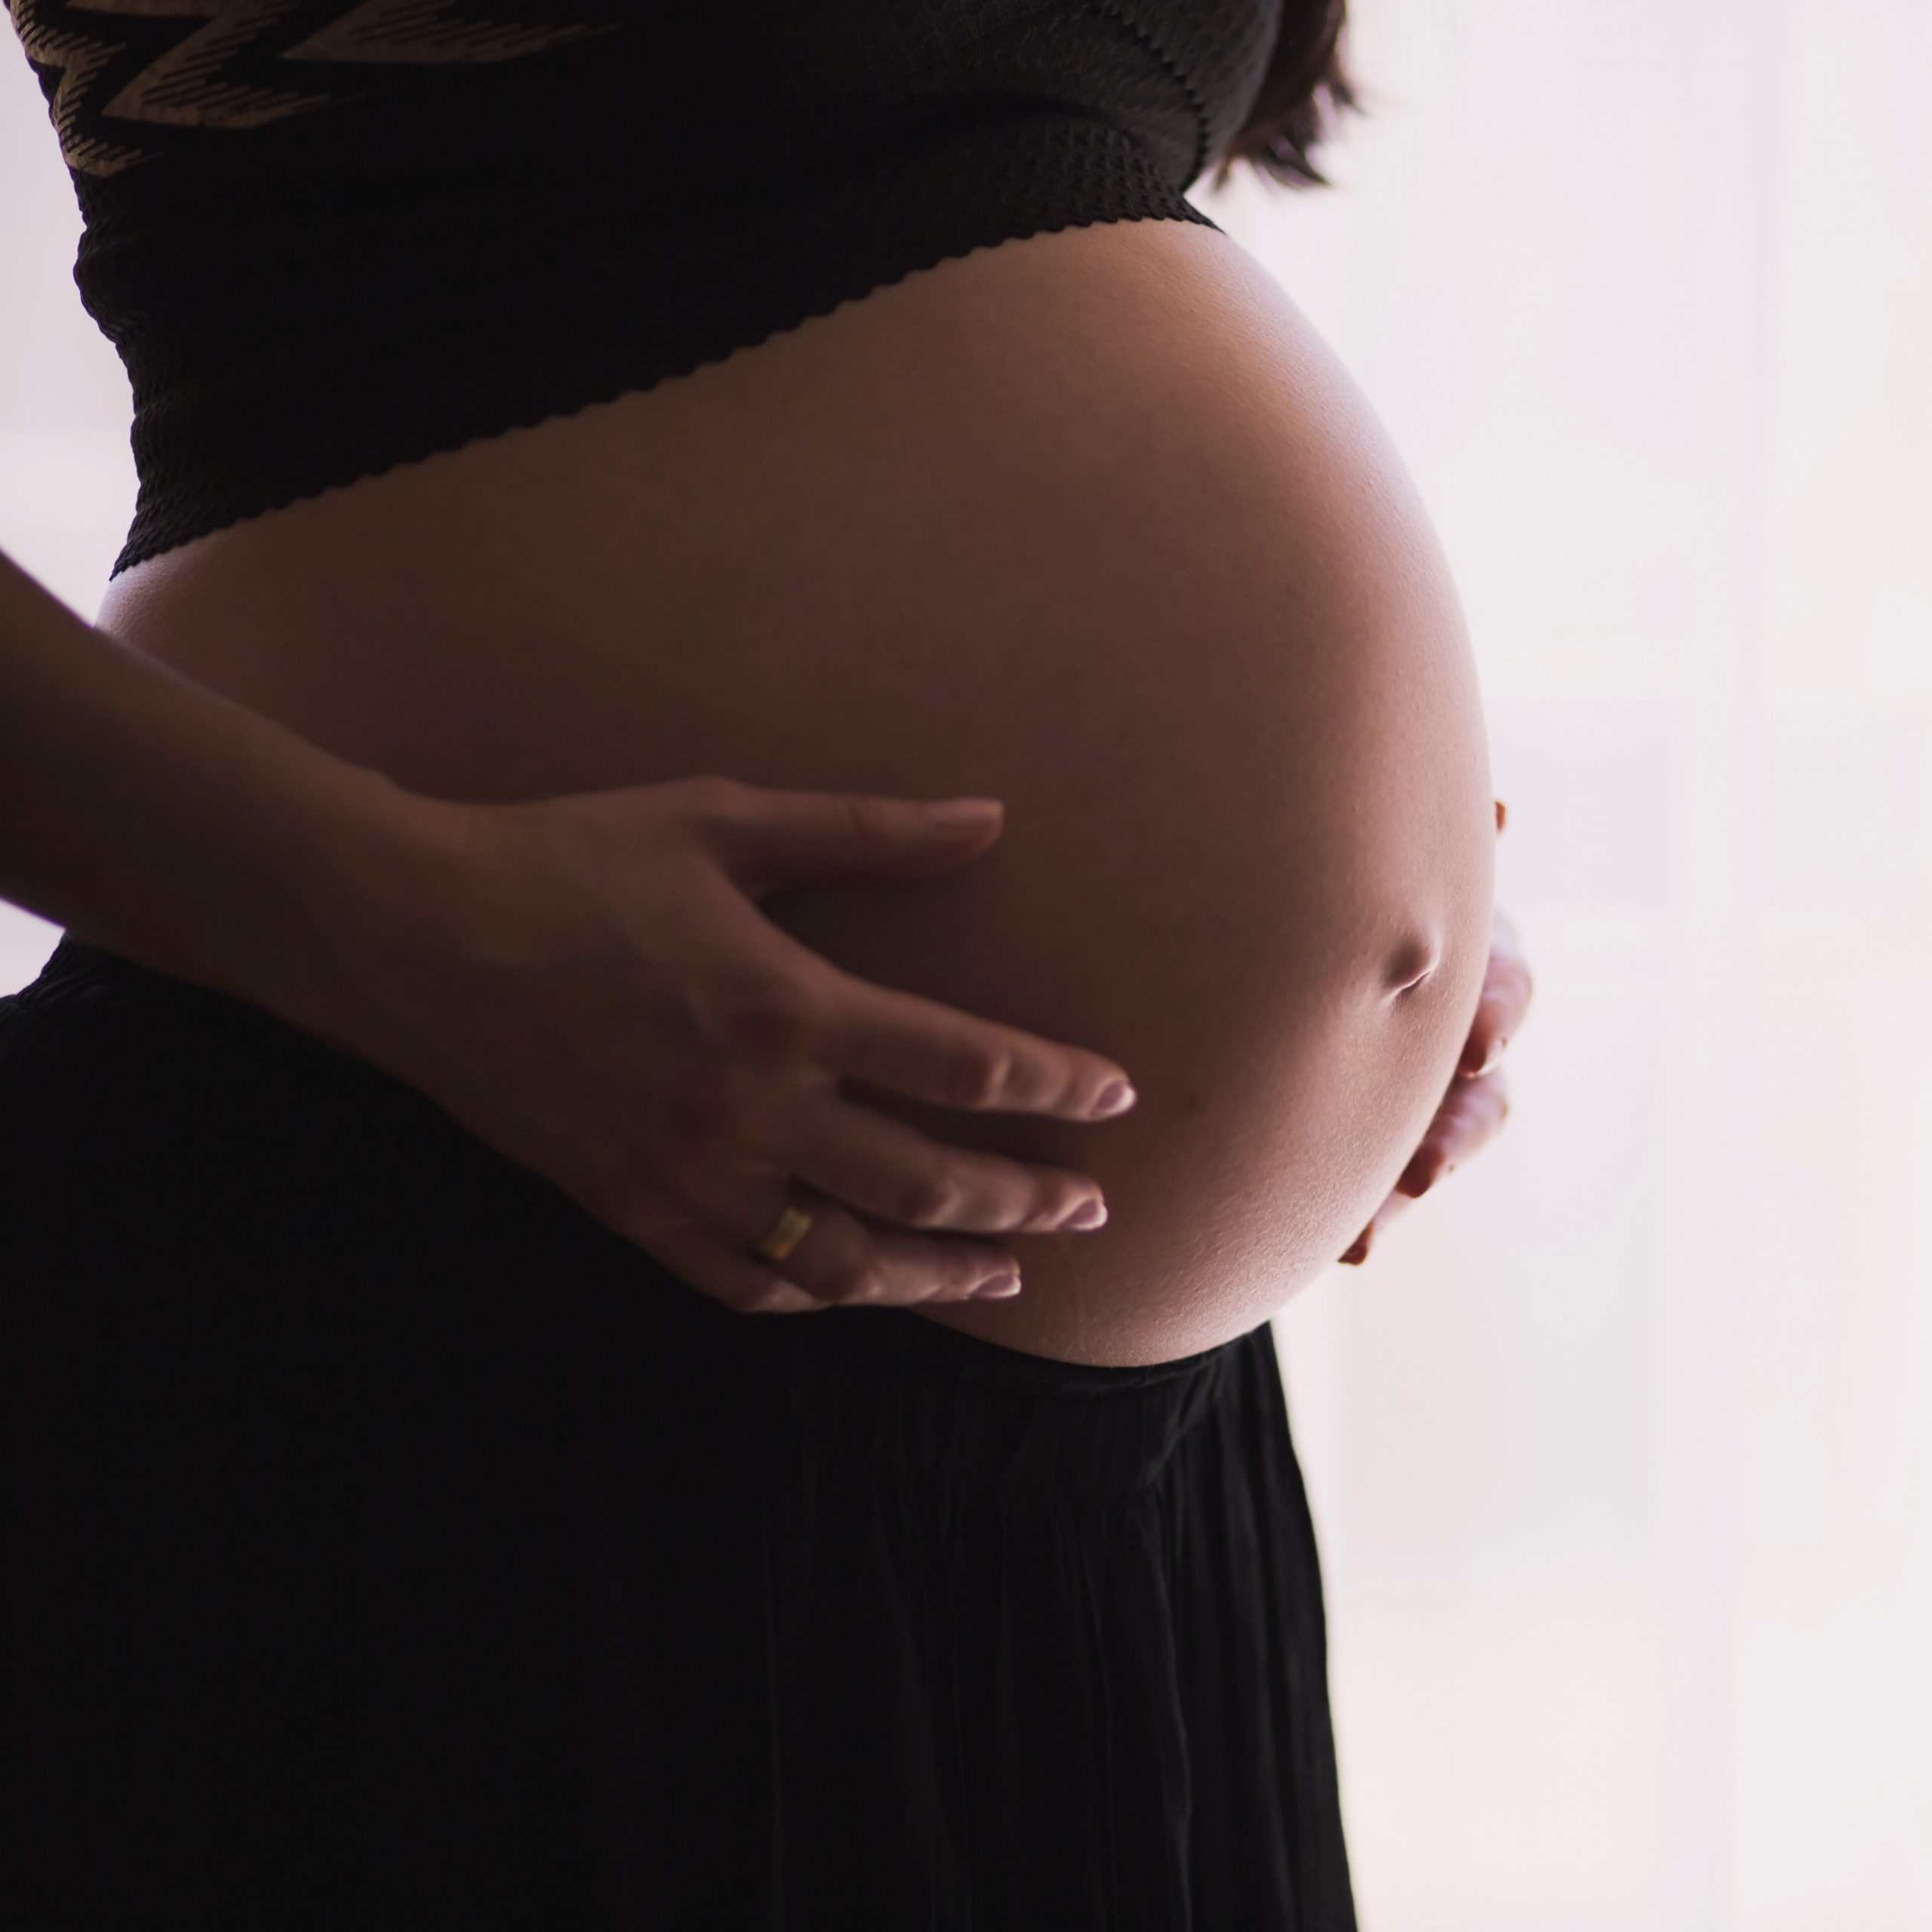 בדיקת שבוע ההריון. freestocks-org-pregnant-woman-unsplash